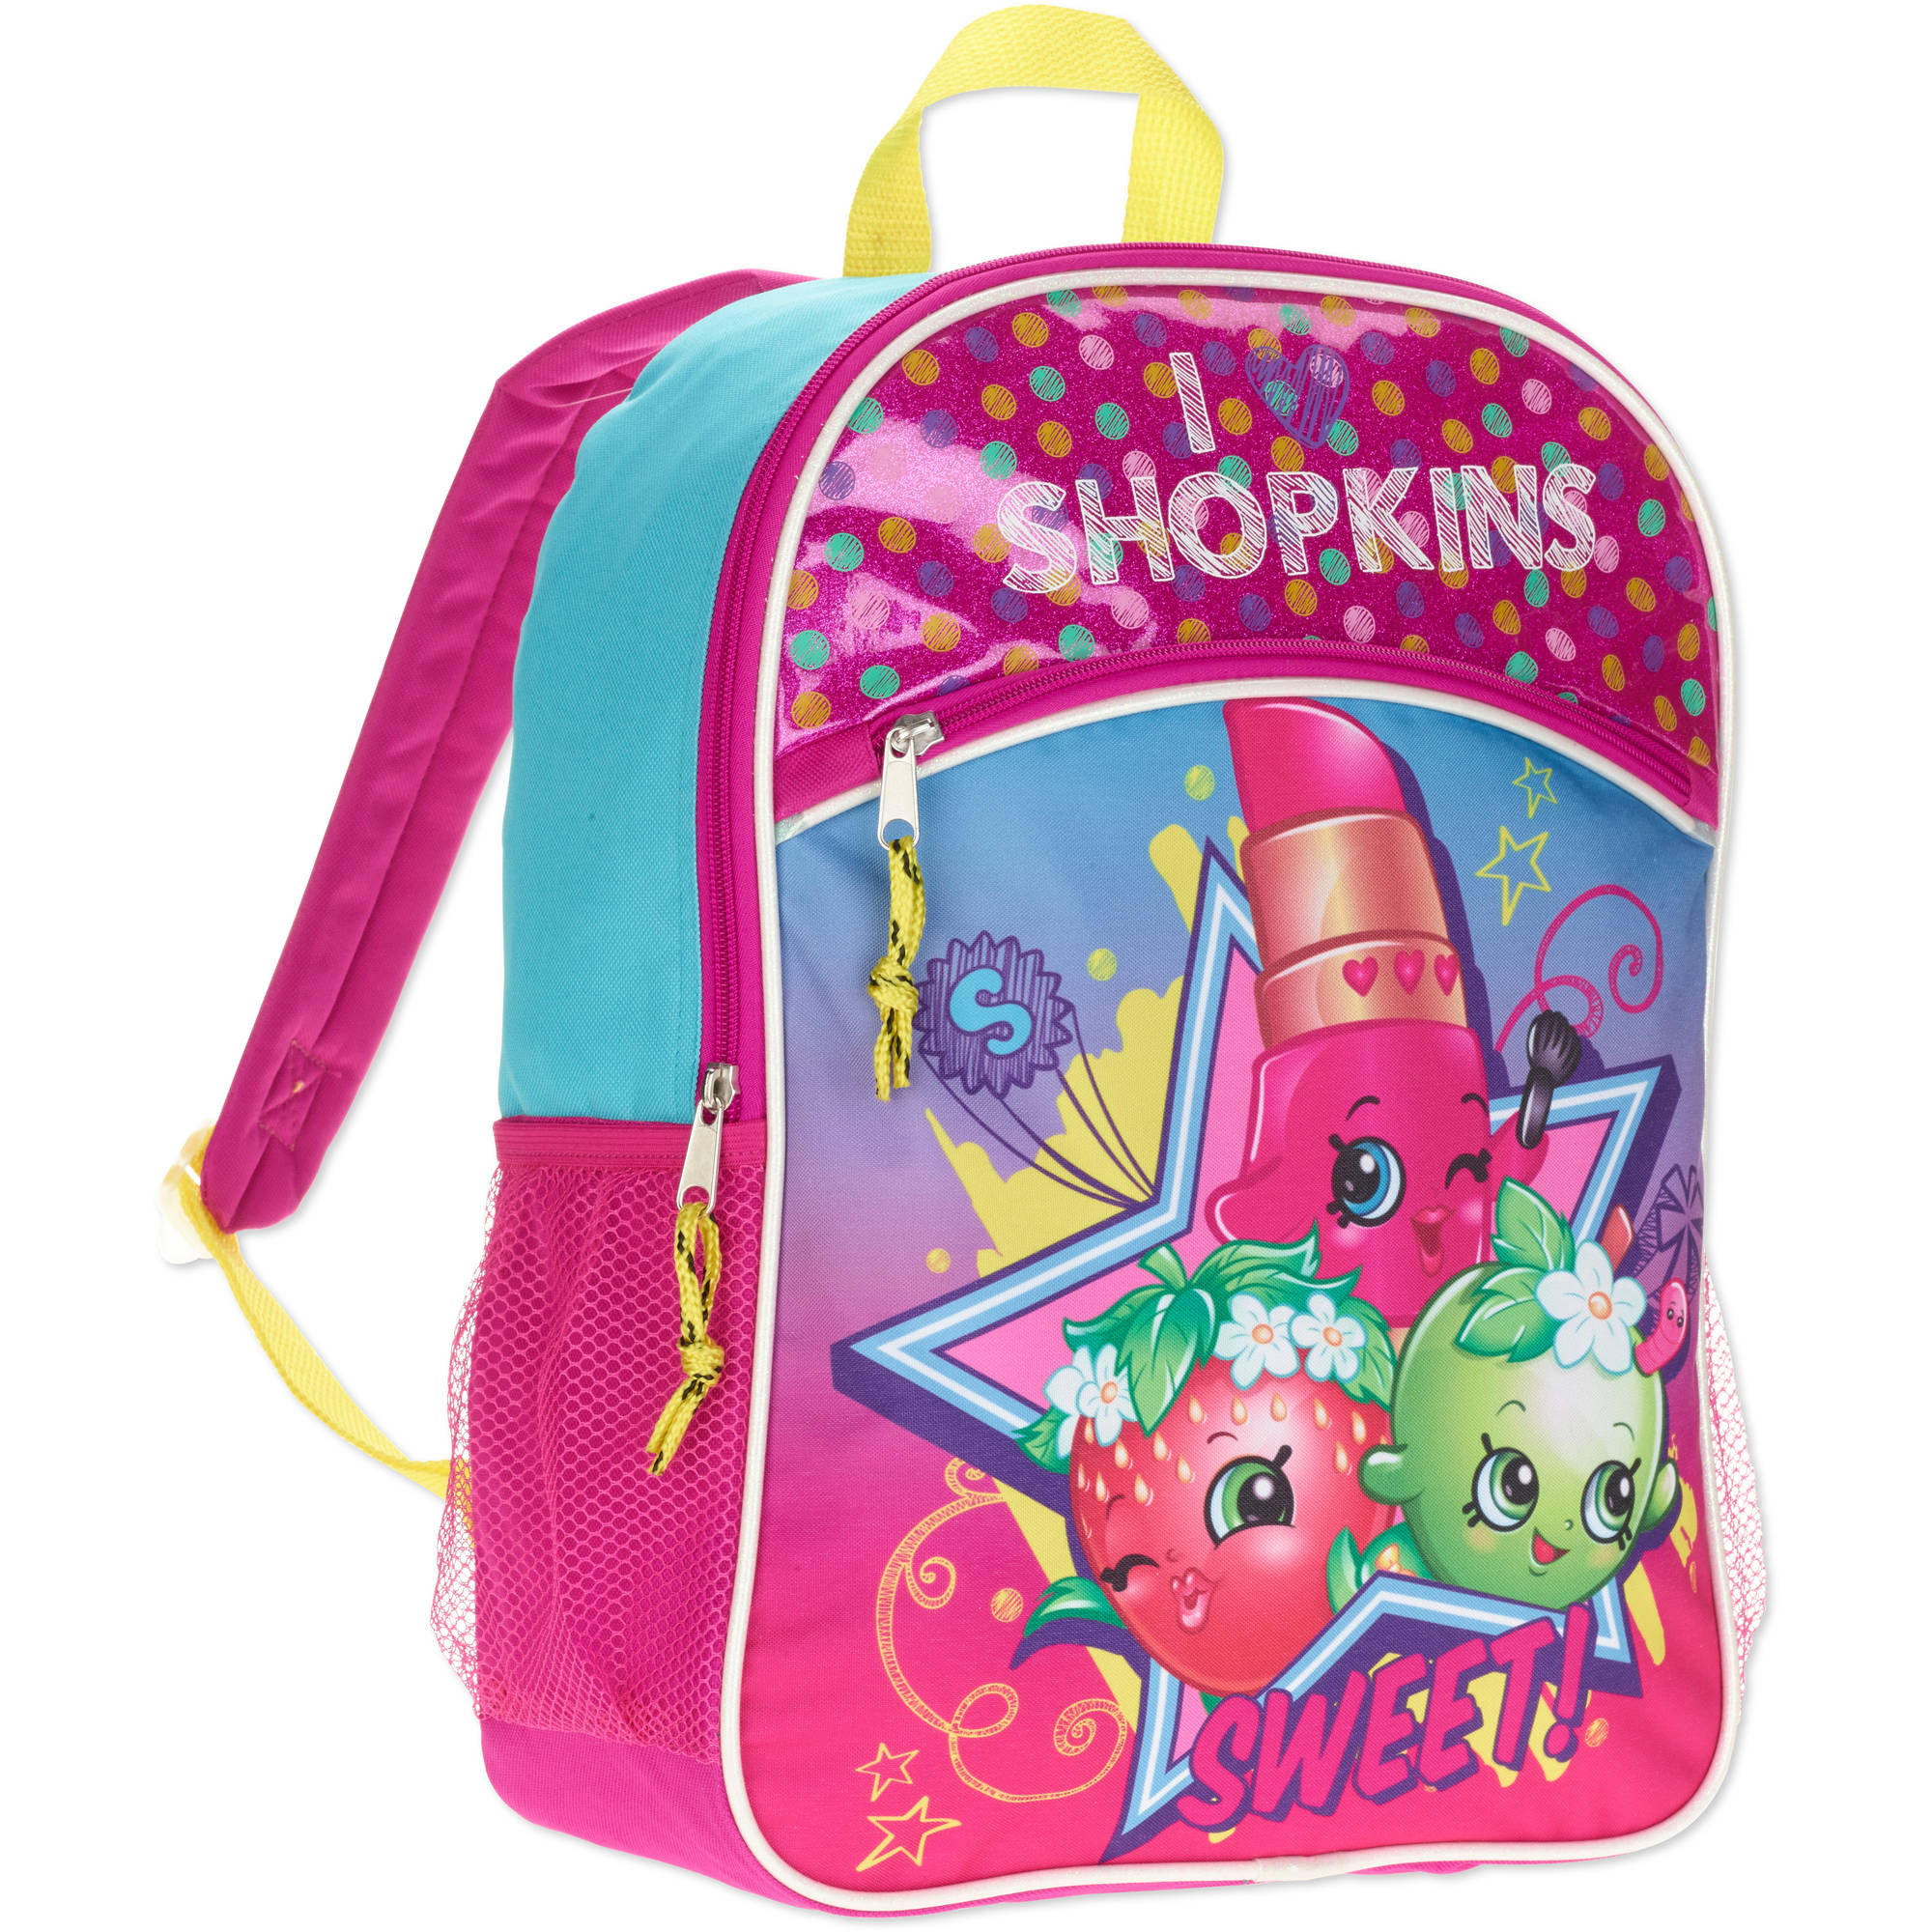 Shopkins Kids backpack - image 1 of 1